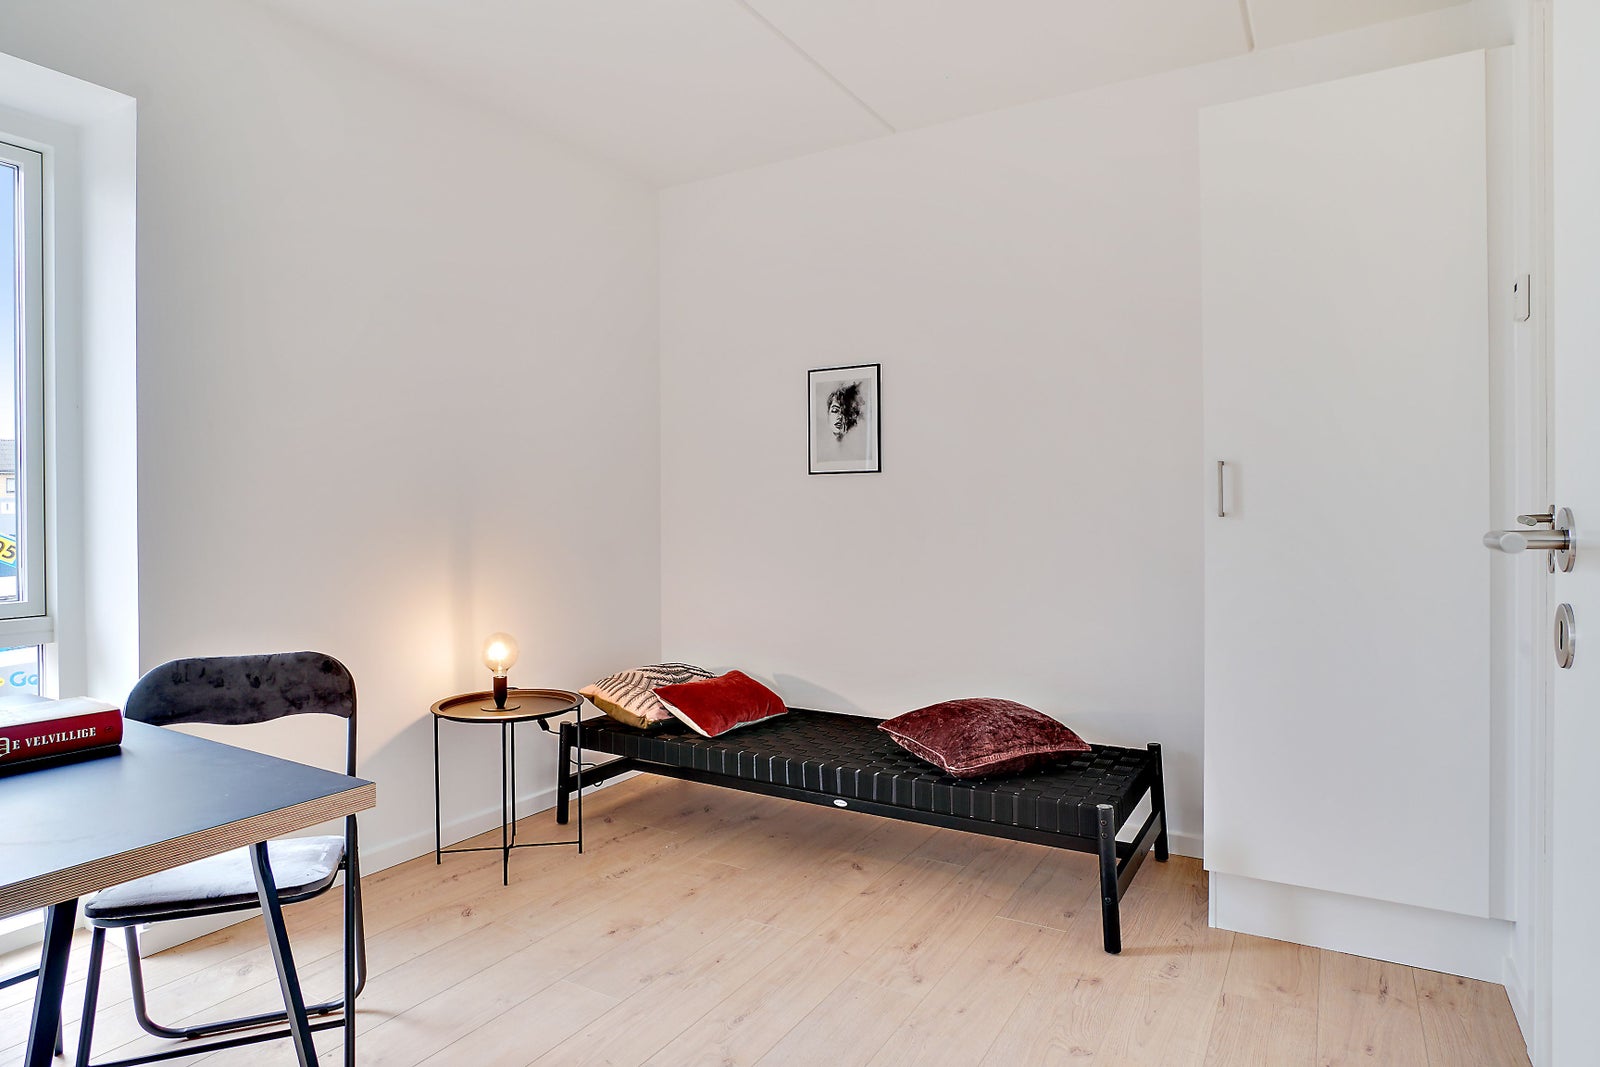 3 værelses lejlighed i Frederikssund 3600 på 81...